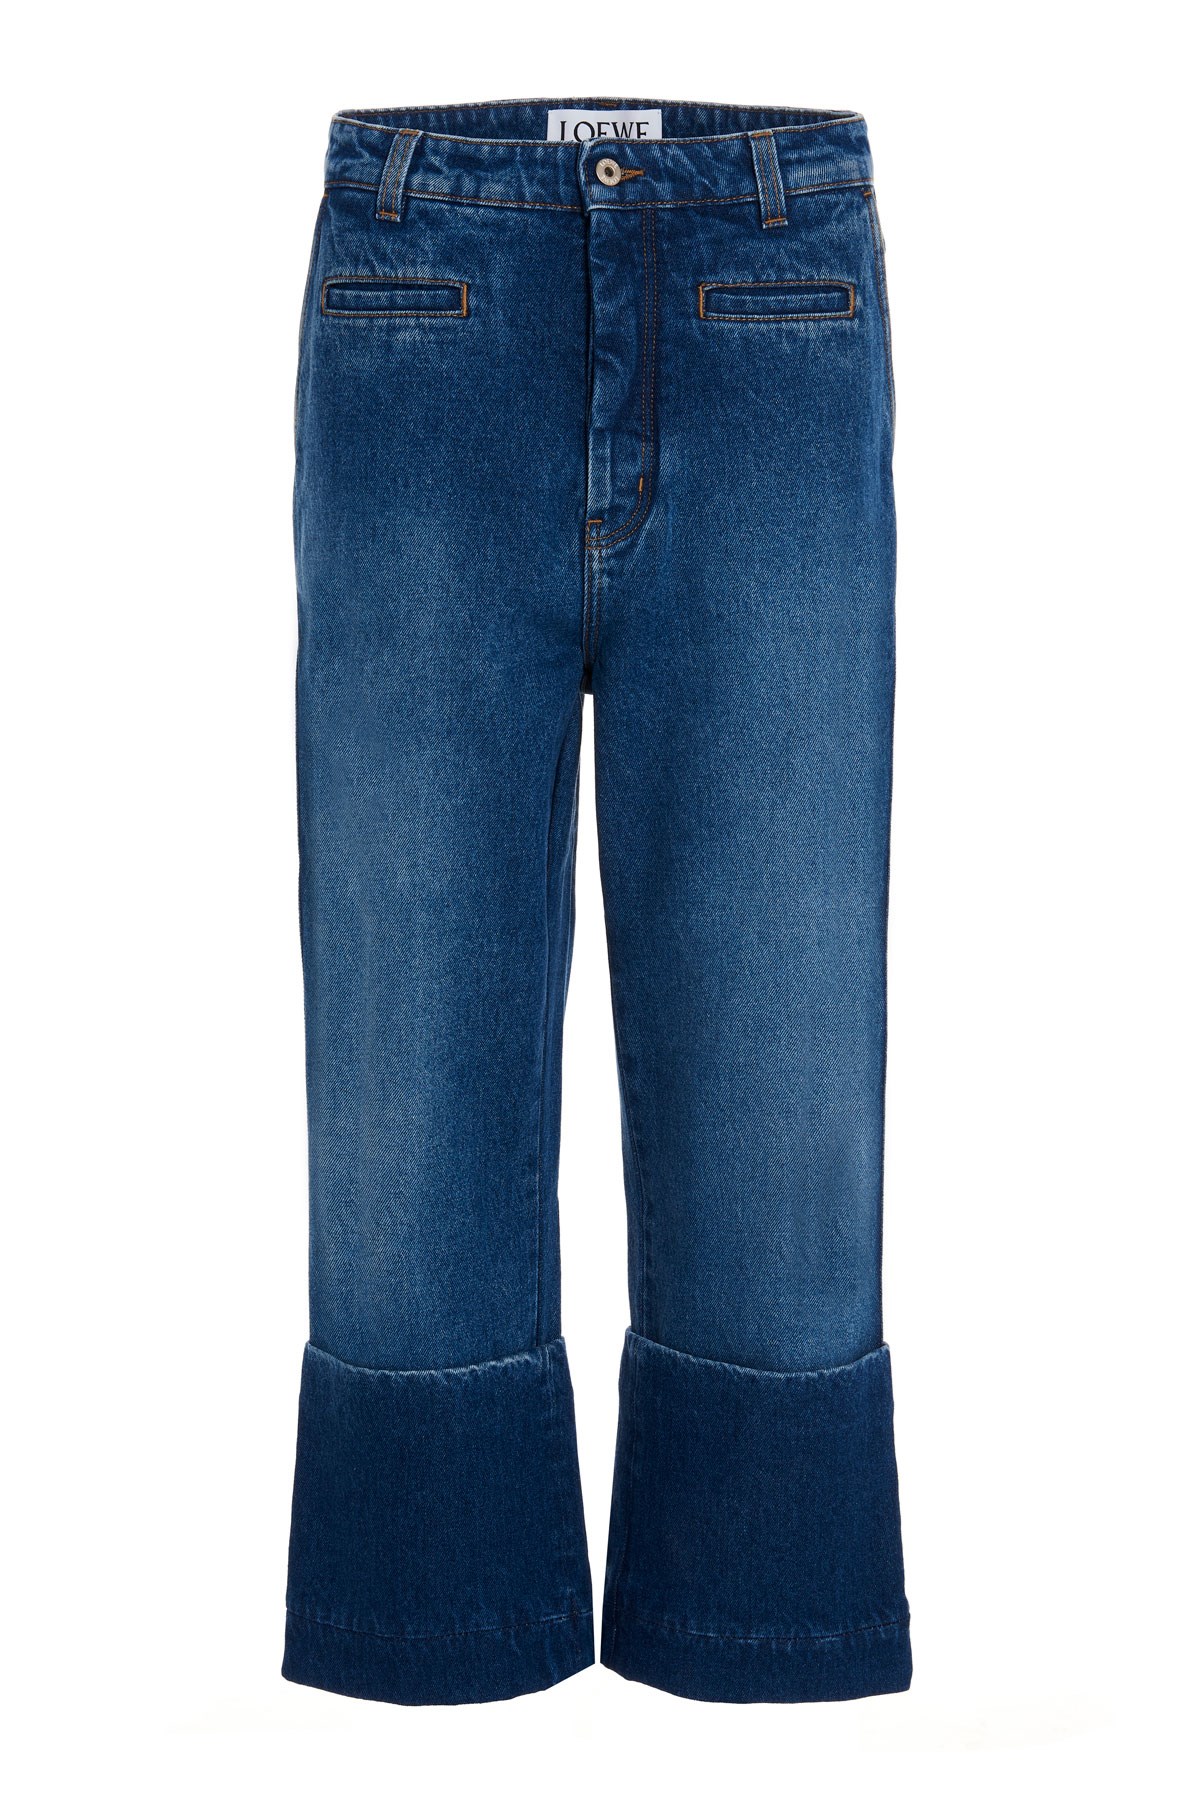 LOEWE 'Fisherman Pants’ Jeans